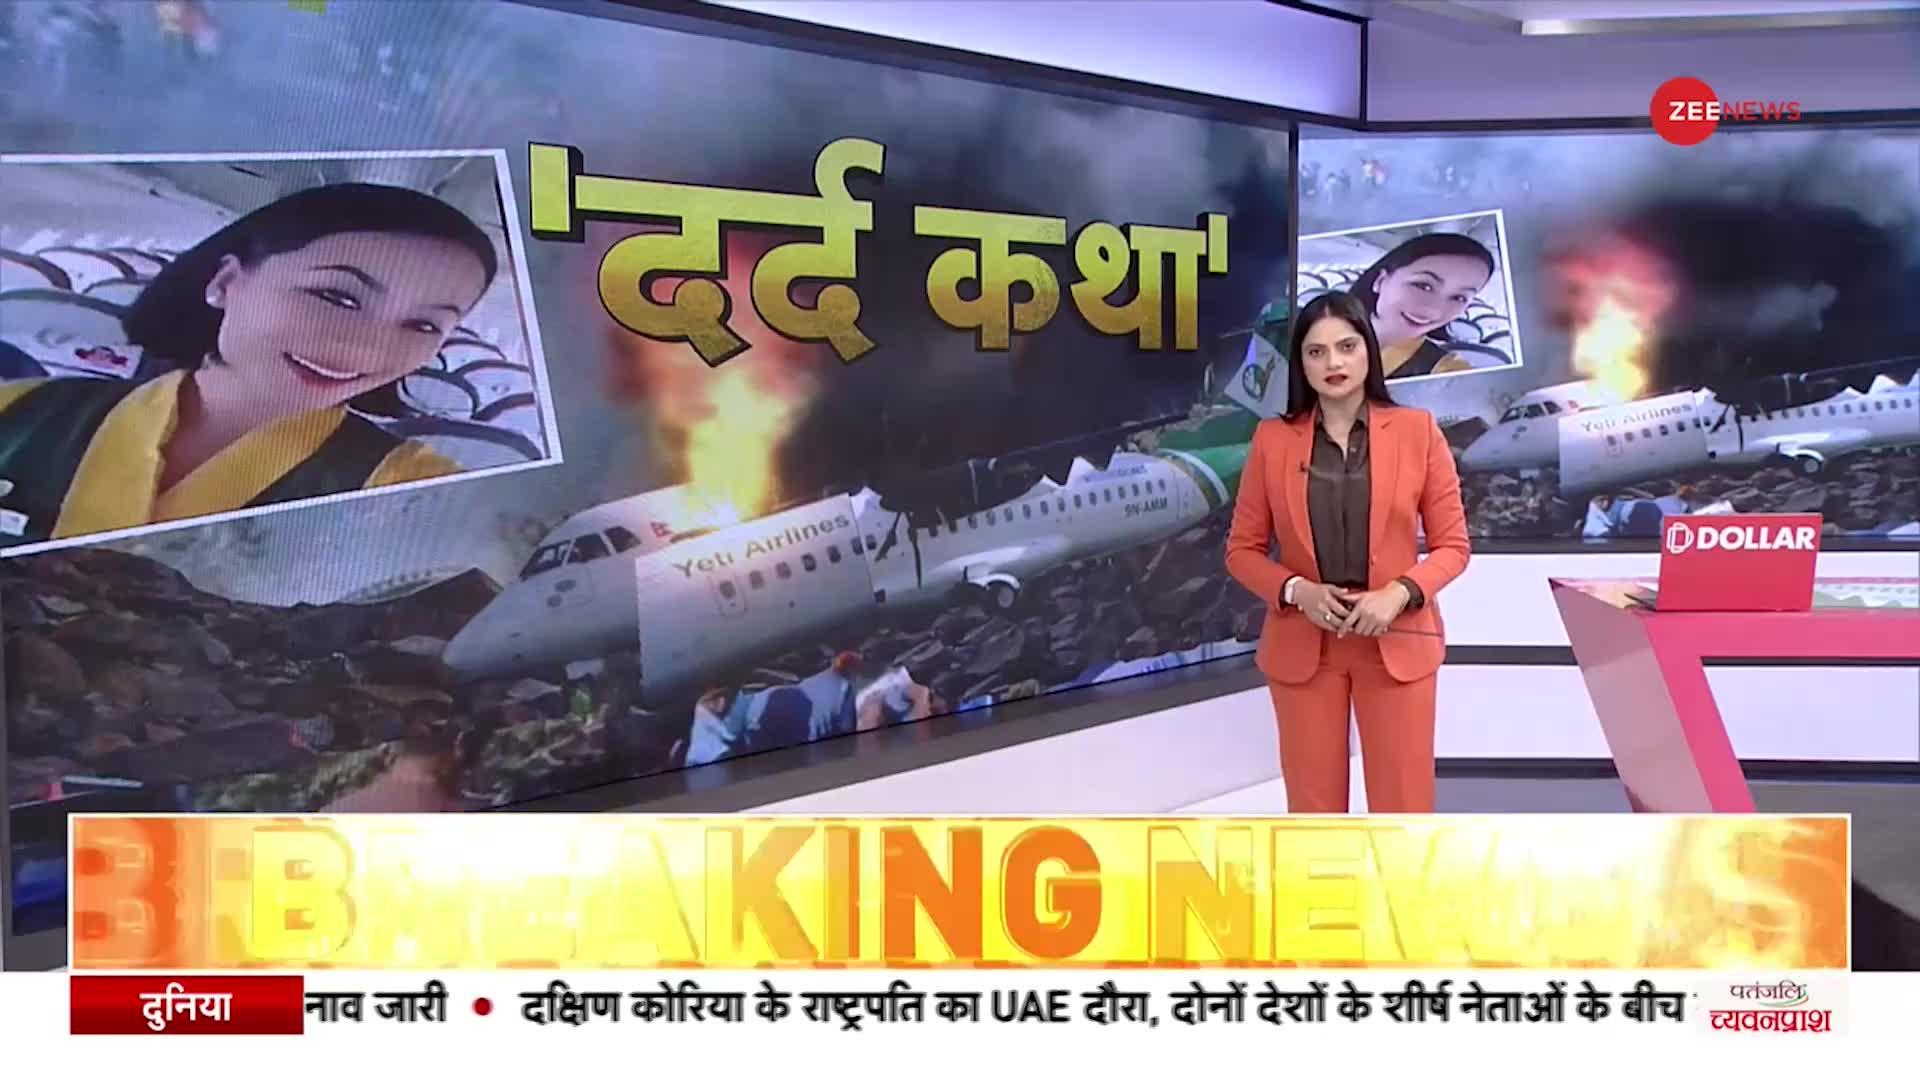 Nepal Plane Crash Video: क्रैश से पहले एयर होस्टेस ने बनाया था ये प्यारा वीडियो, अब हो रहा वायरल